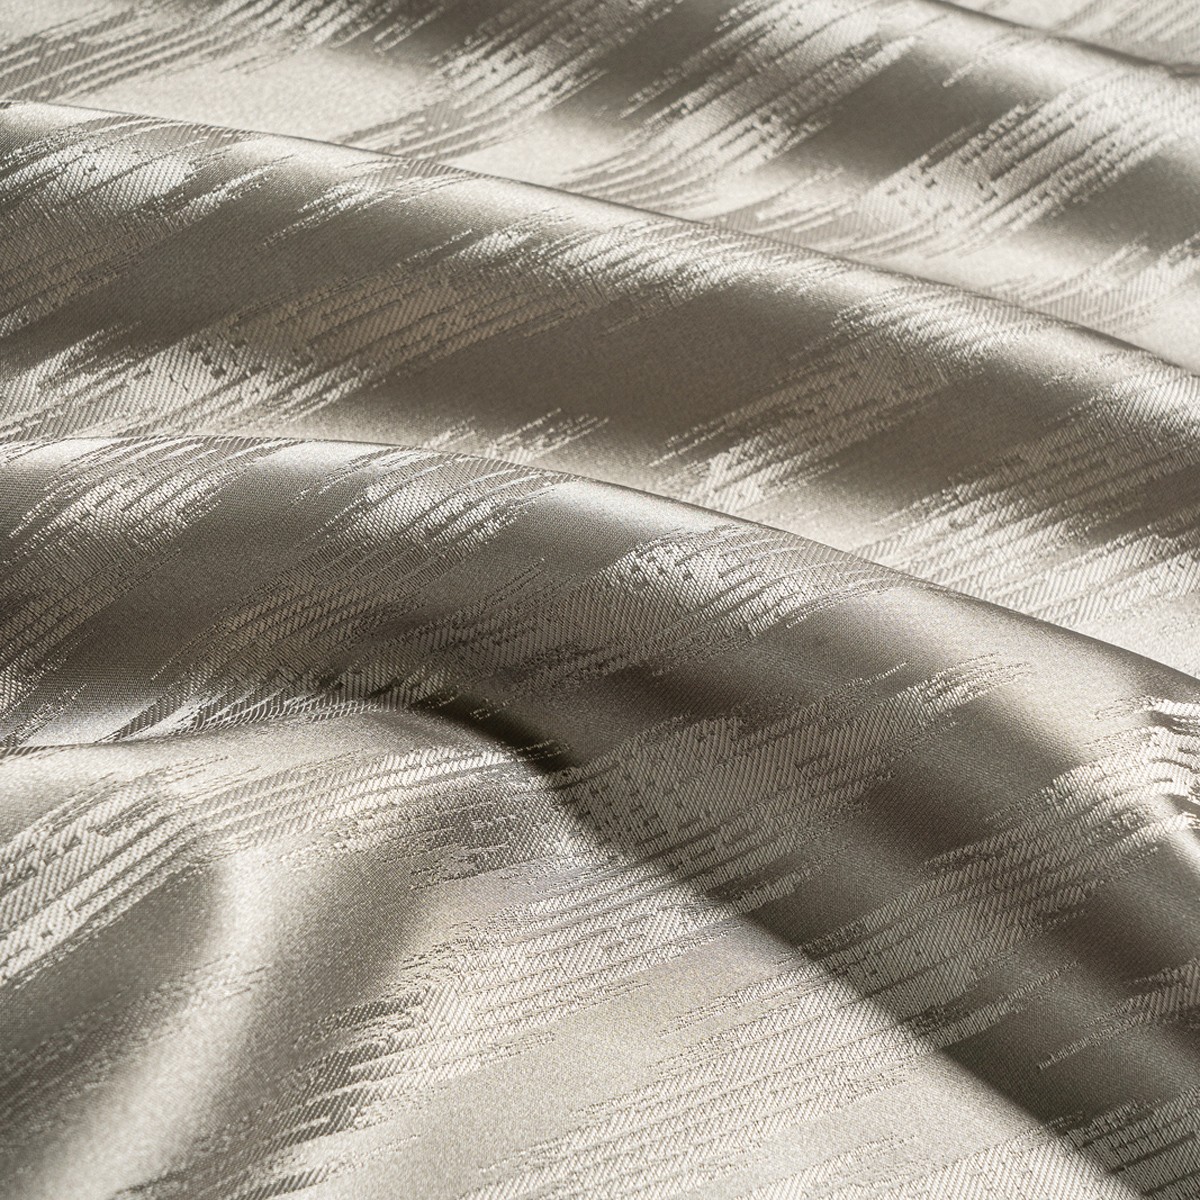  Портьерная ткань DAZZLE FUMA, ширина 280 см  - Фото